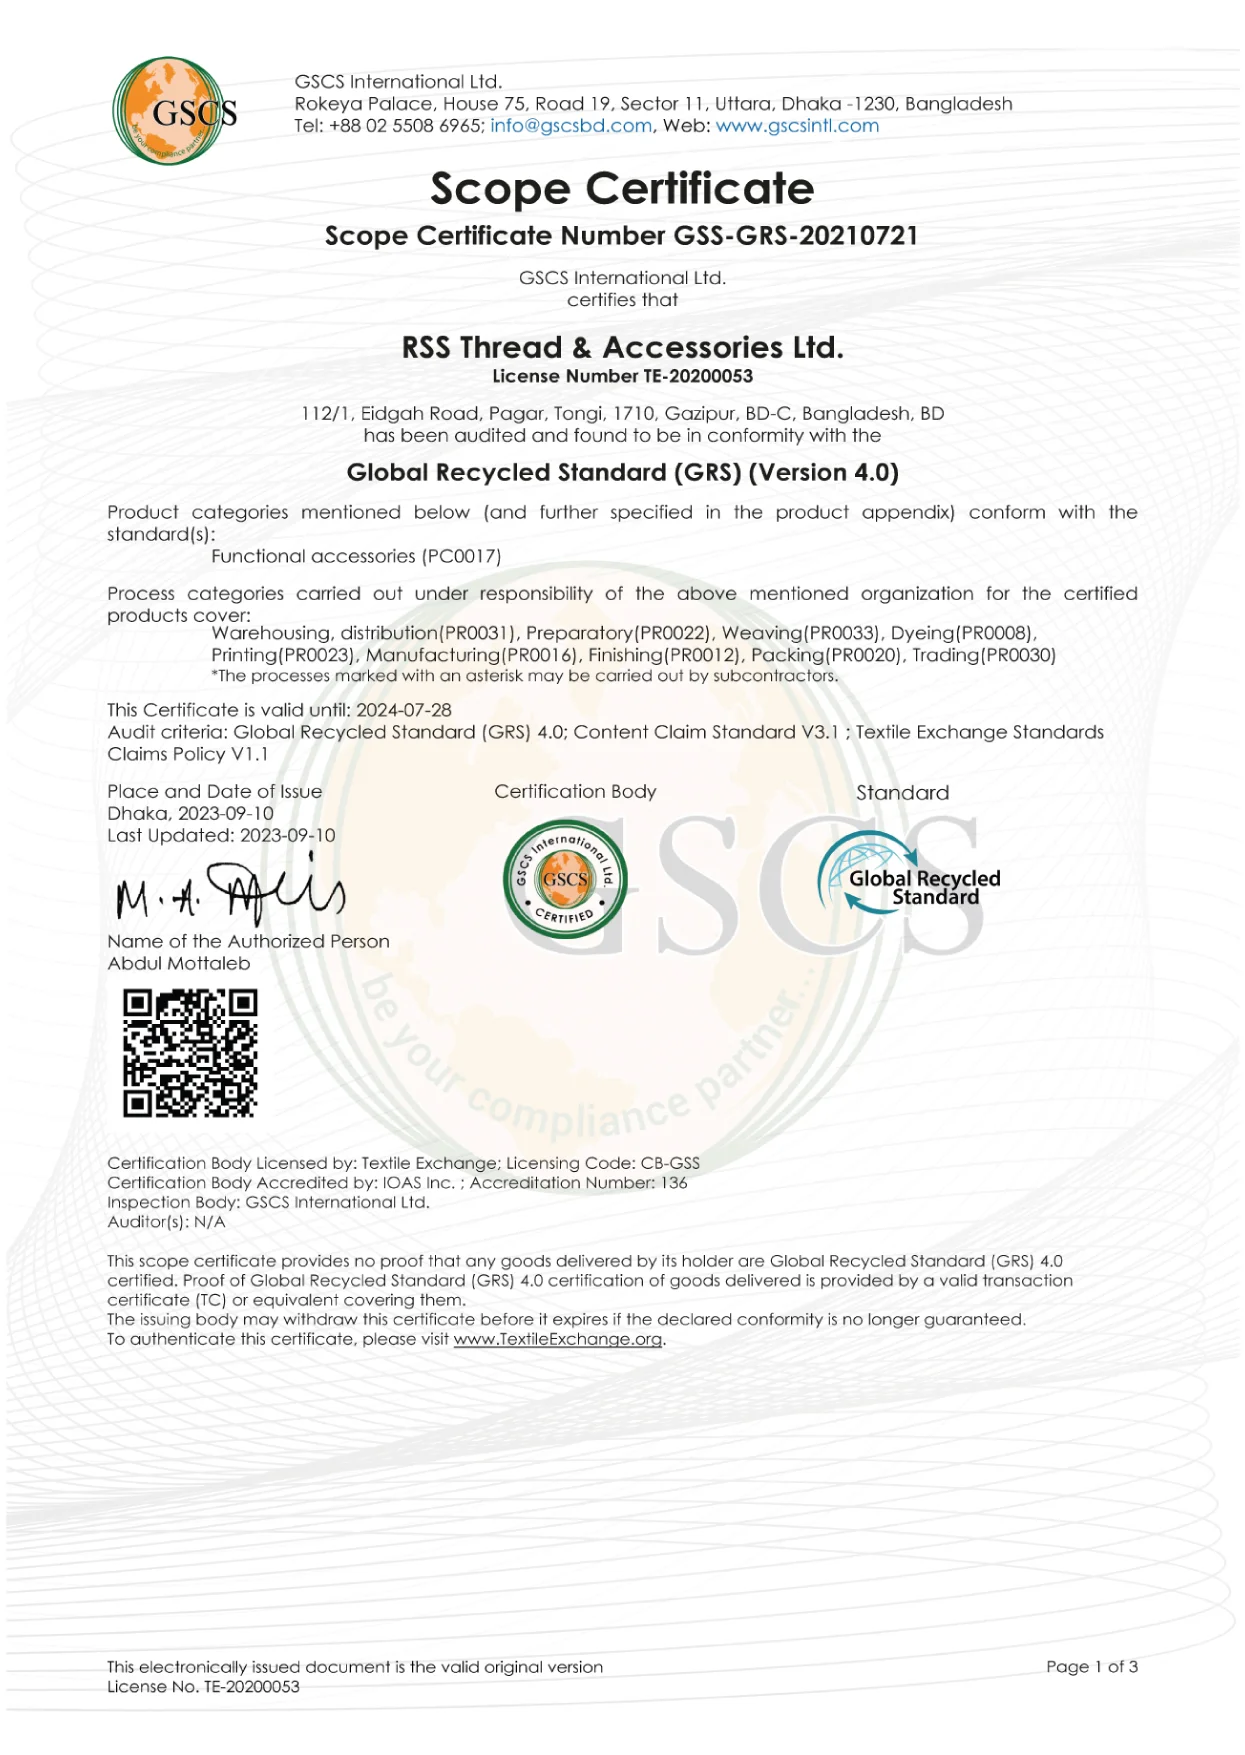 GSCS GRS RSS Thread & Accessories Ltd